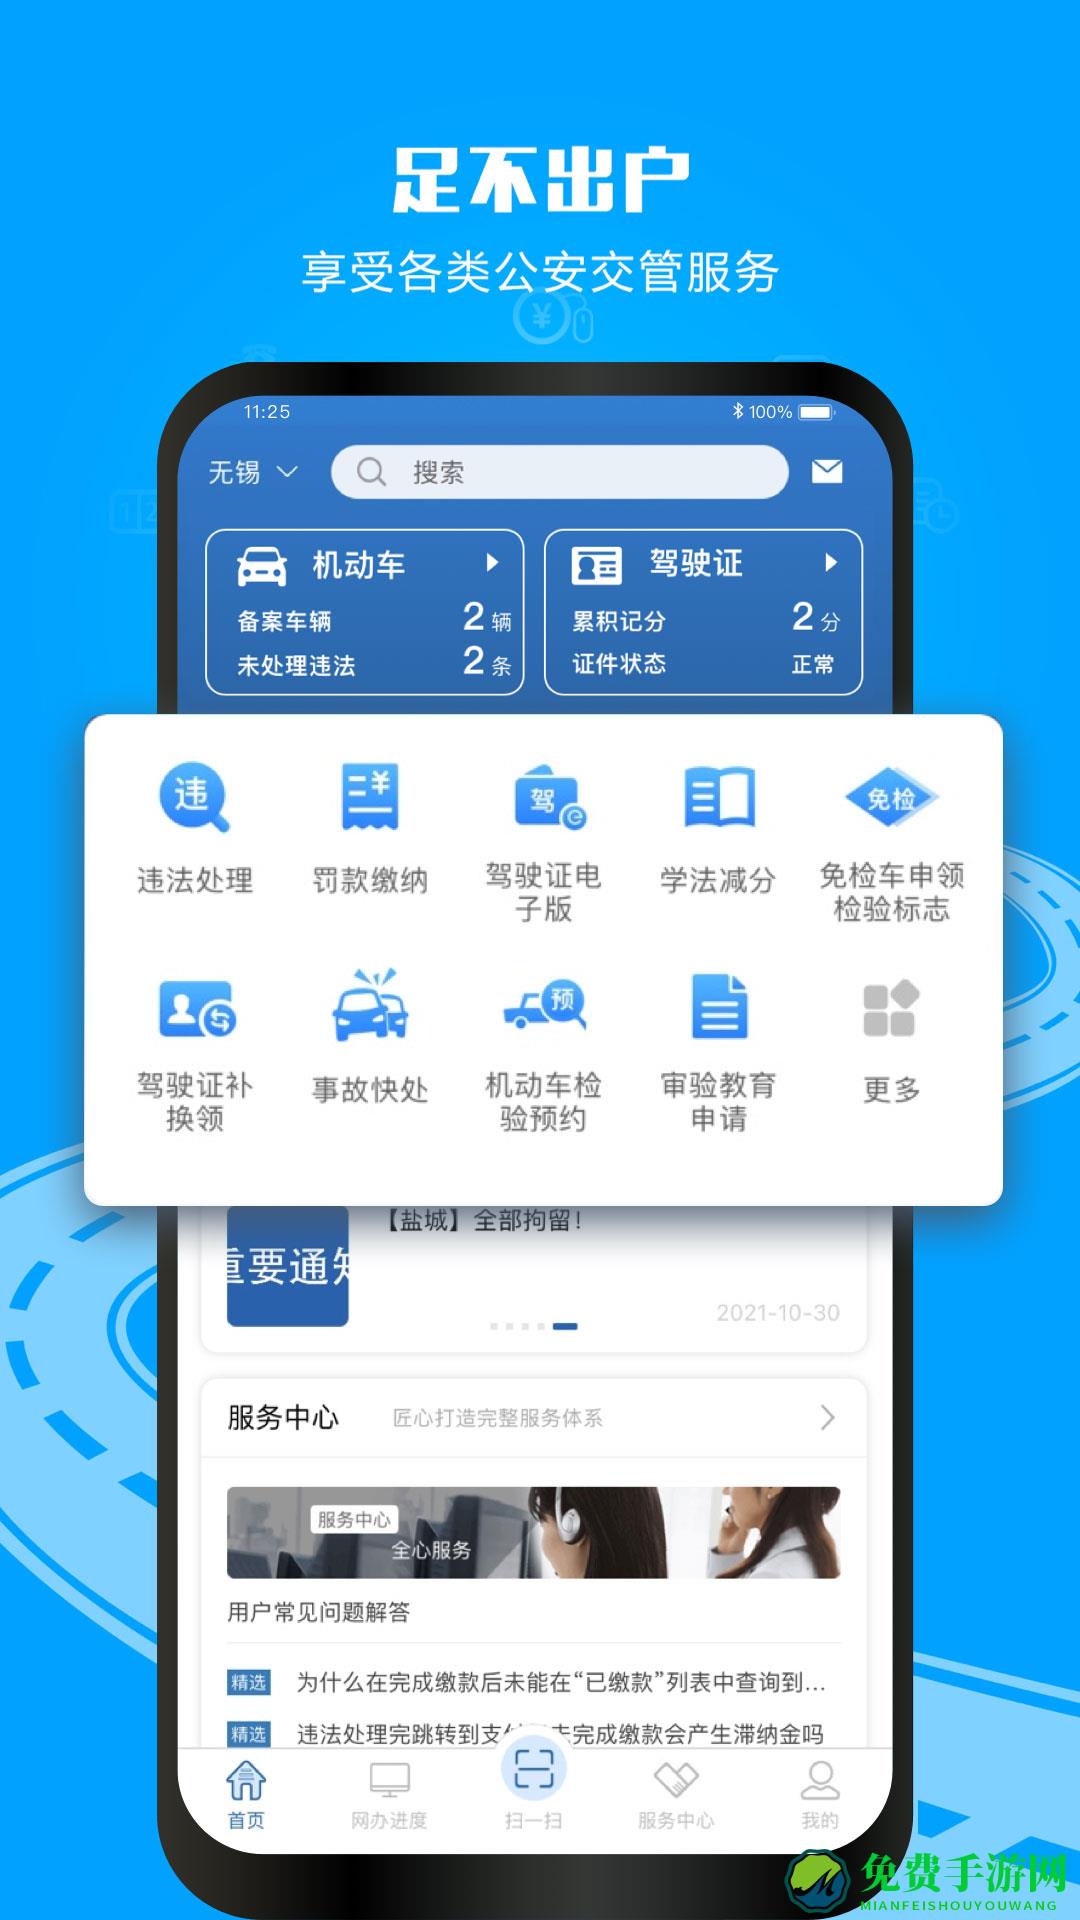 武汉交管12123手机app